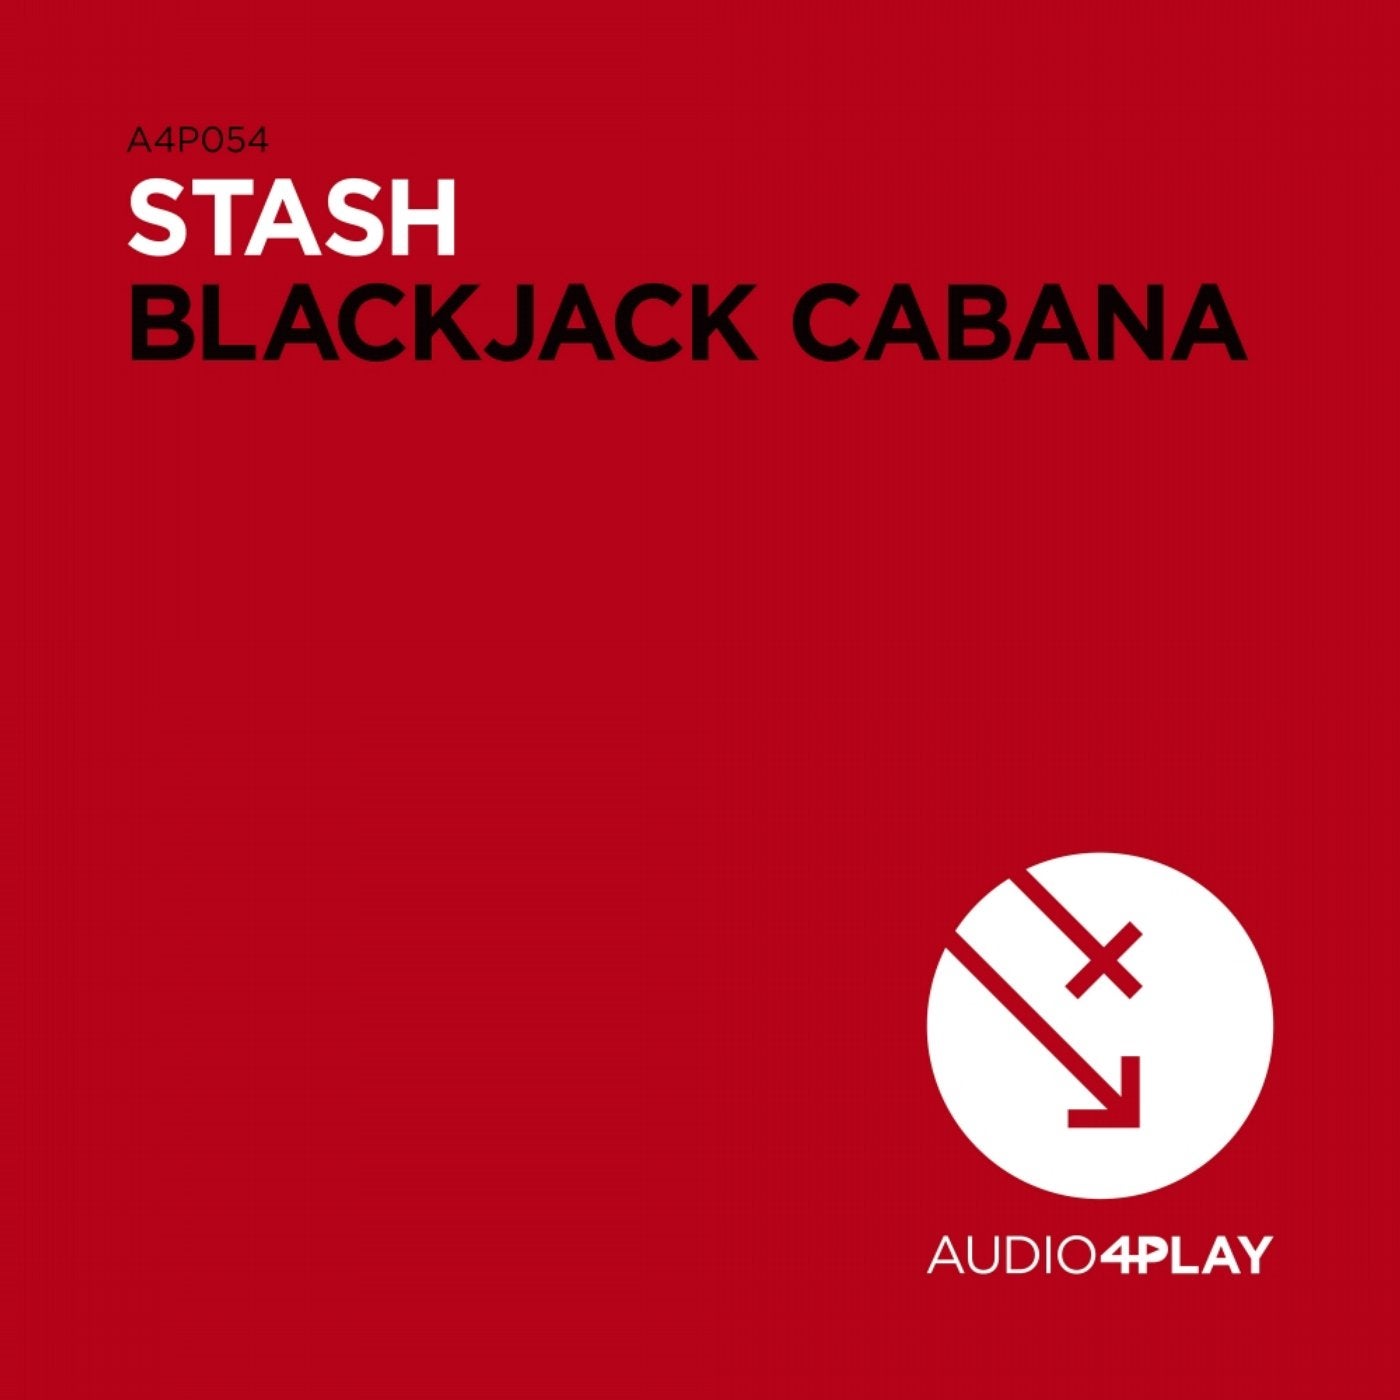 Blackjack Cabana